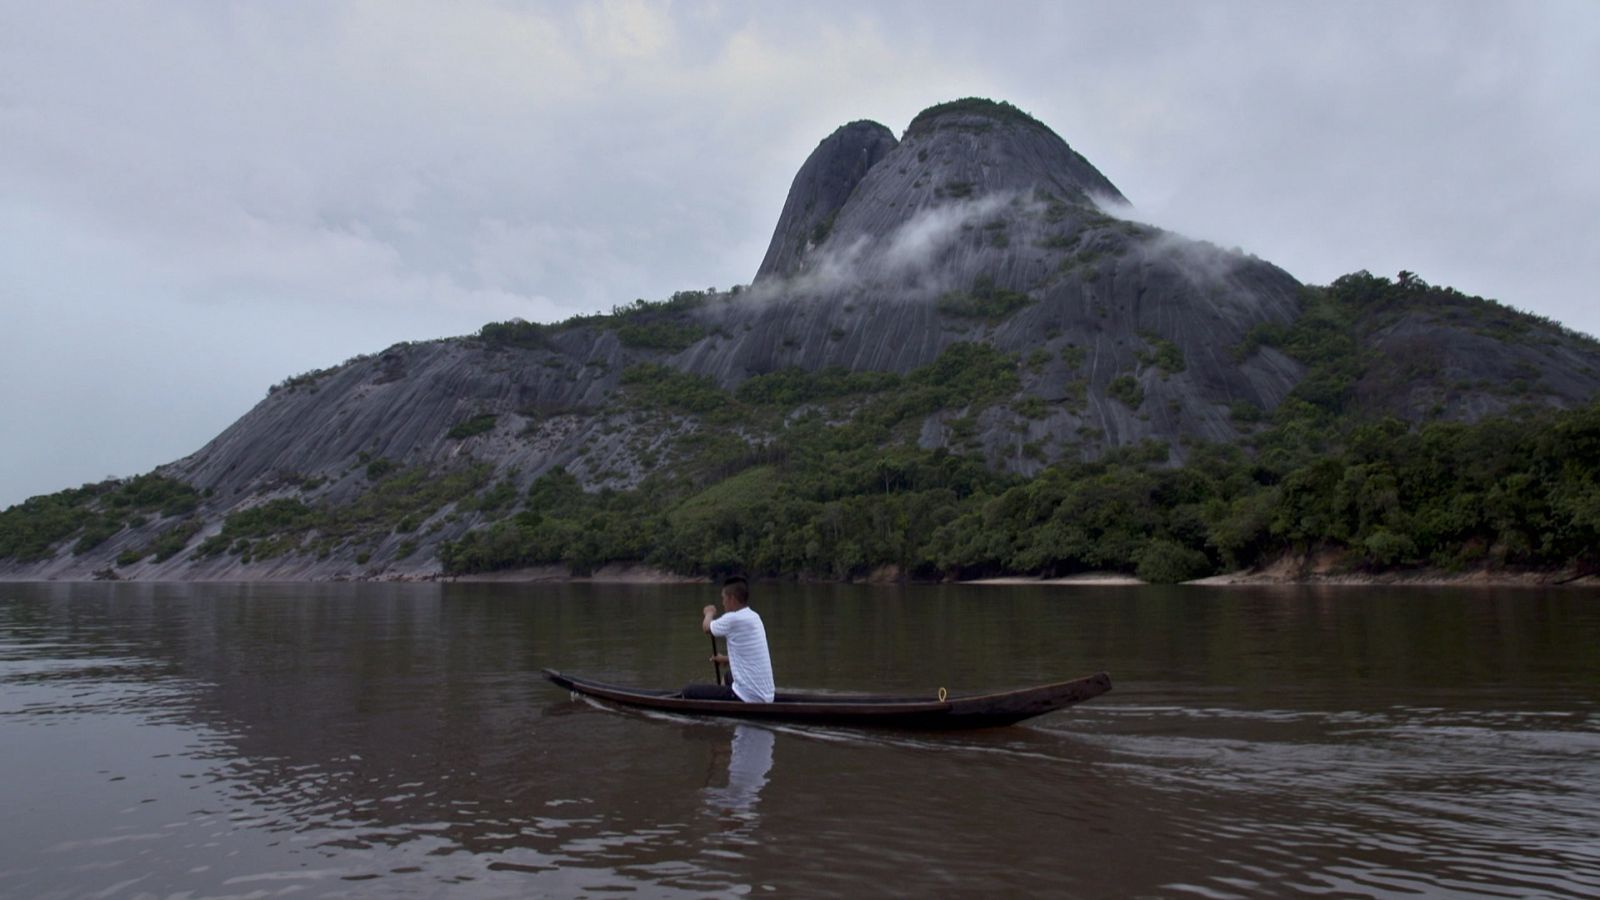  Un home amb una canoa i darrere una petita muntanya envoltada de boira